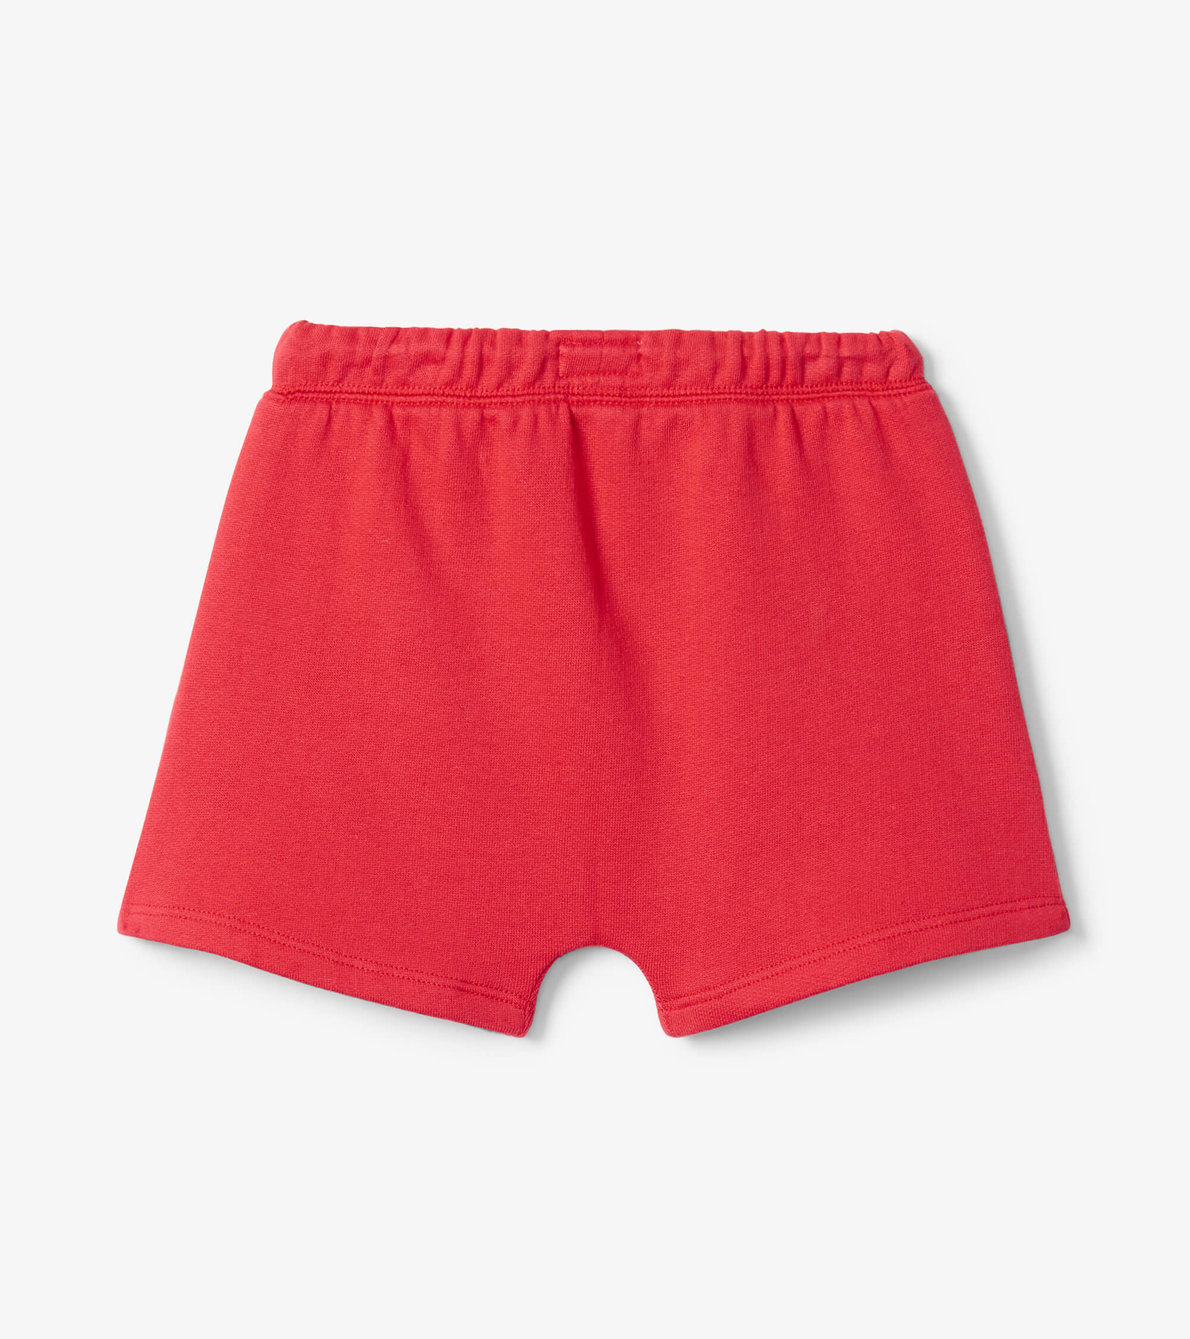 View larger image of Nautical Red Toddler Kanga Shorts